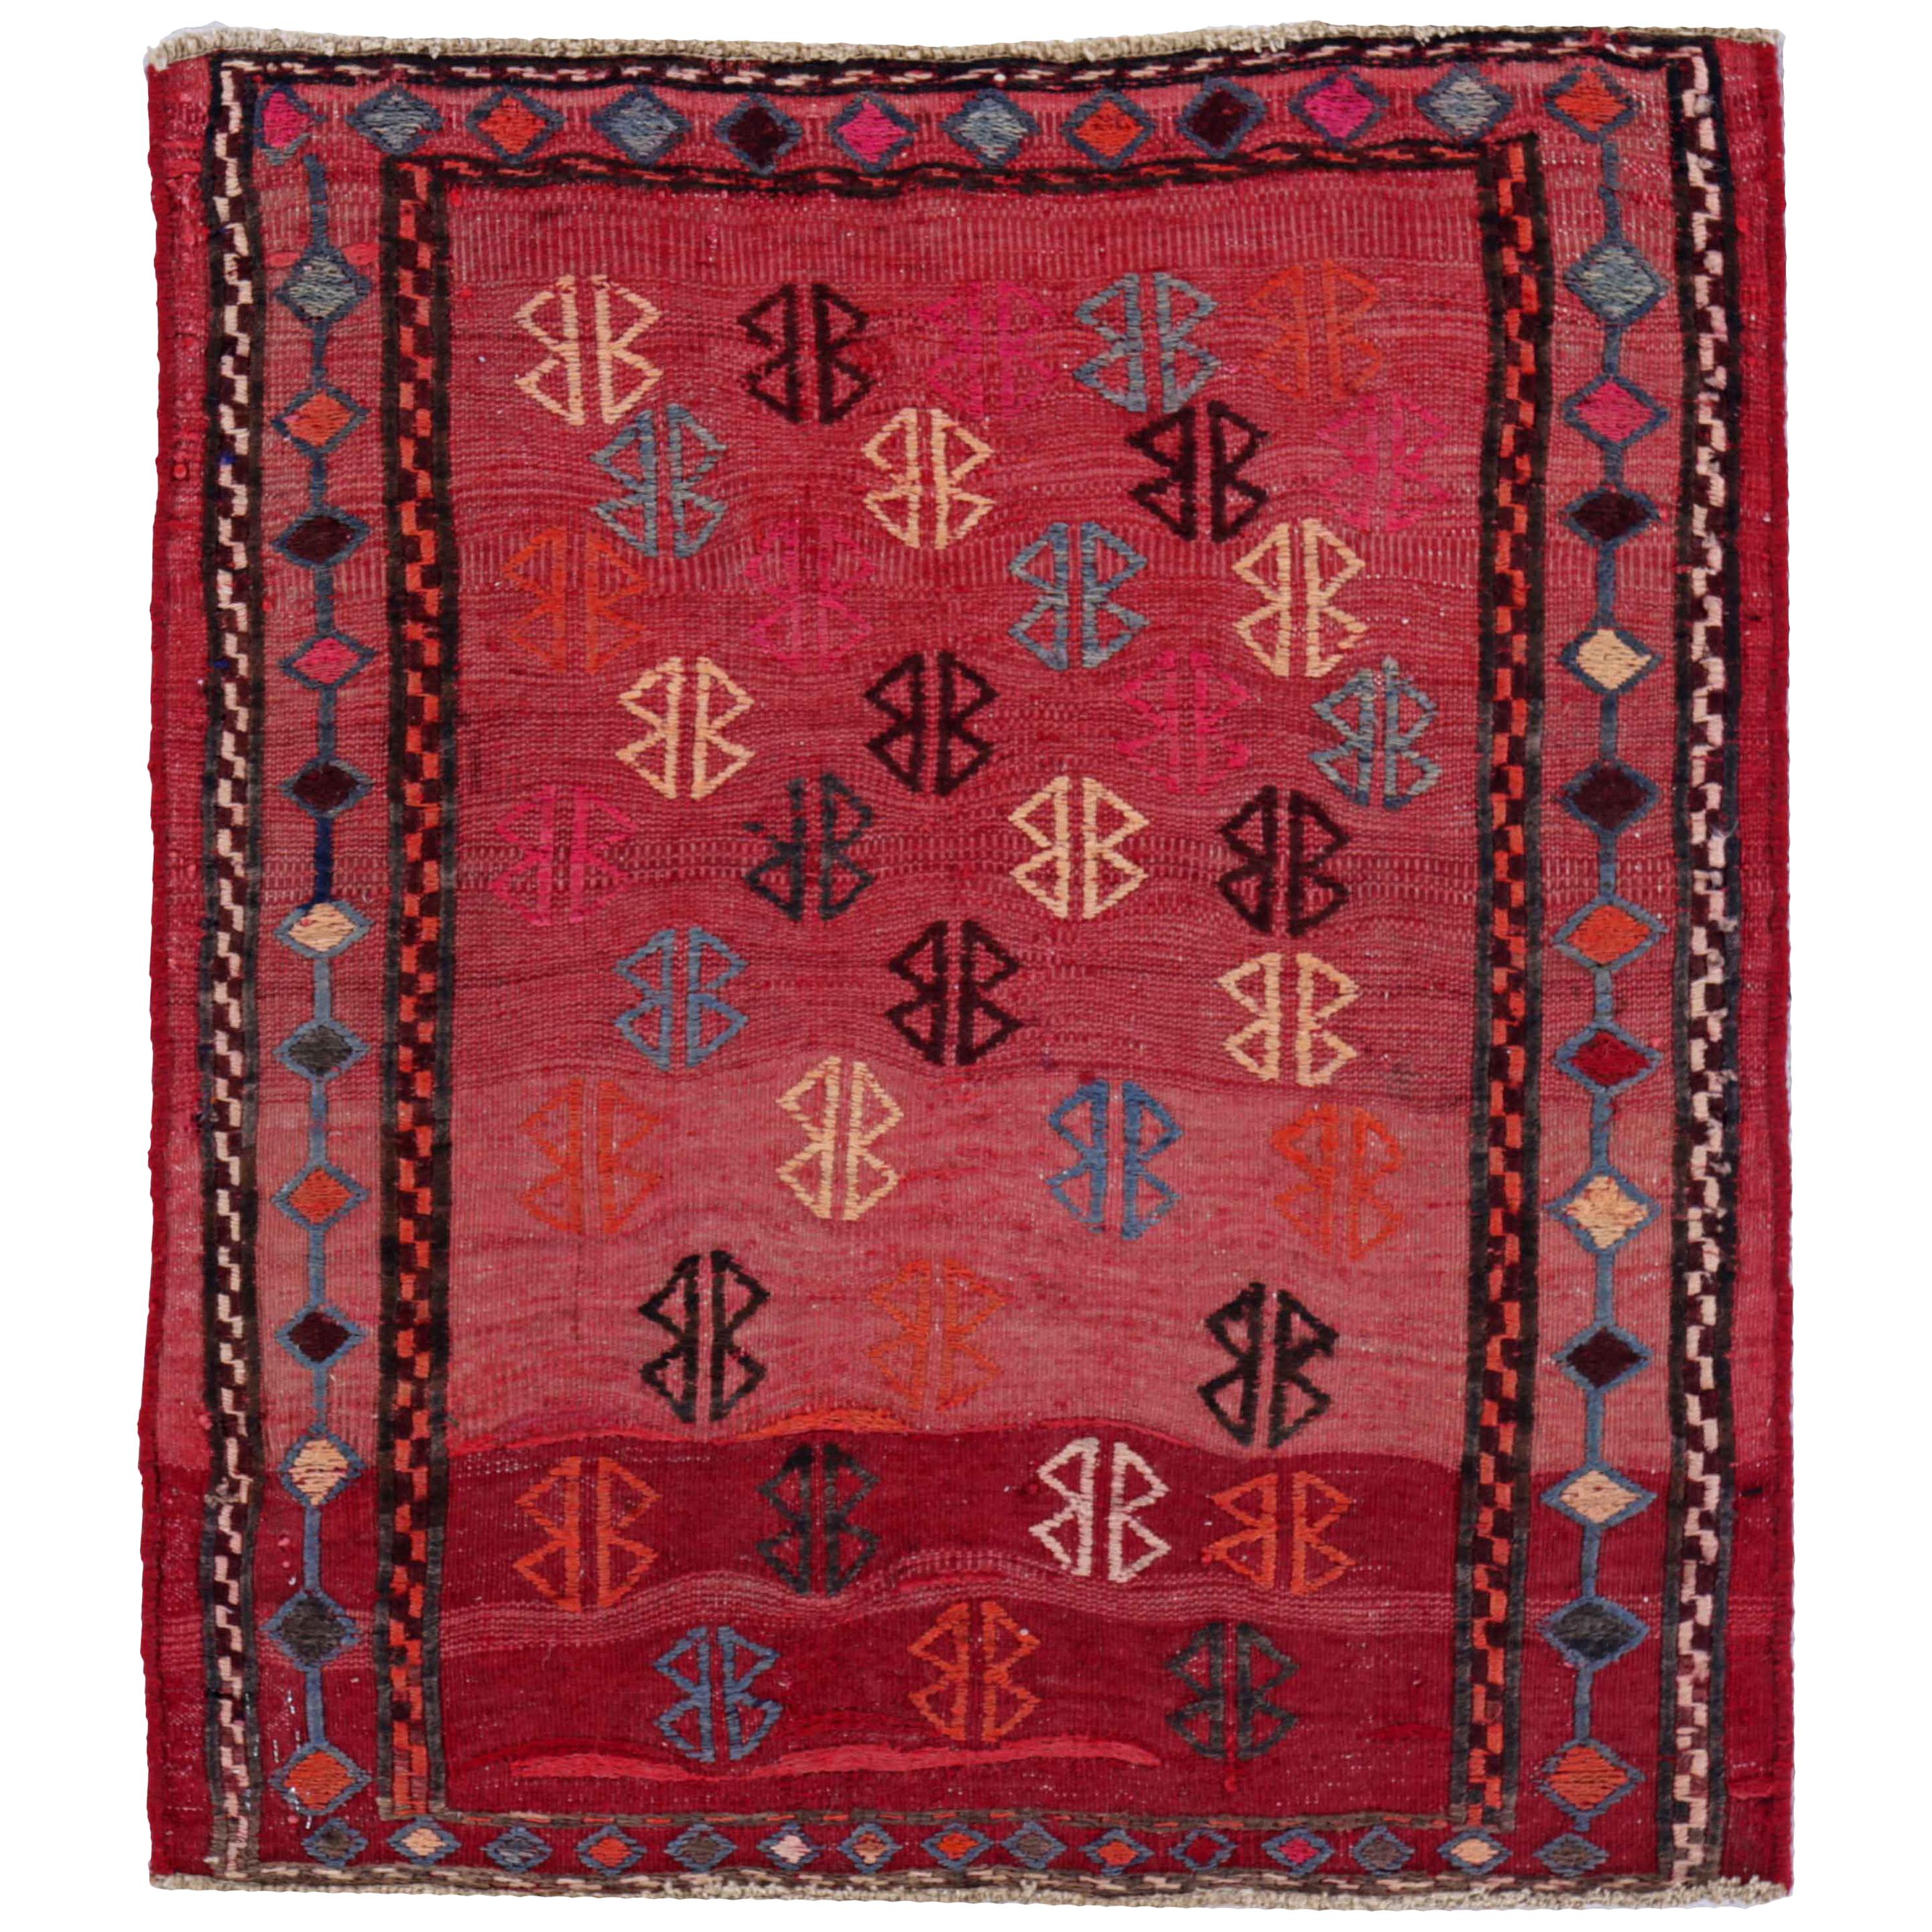 Antique Persian Square Rug Kilim Design